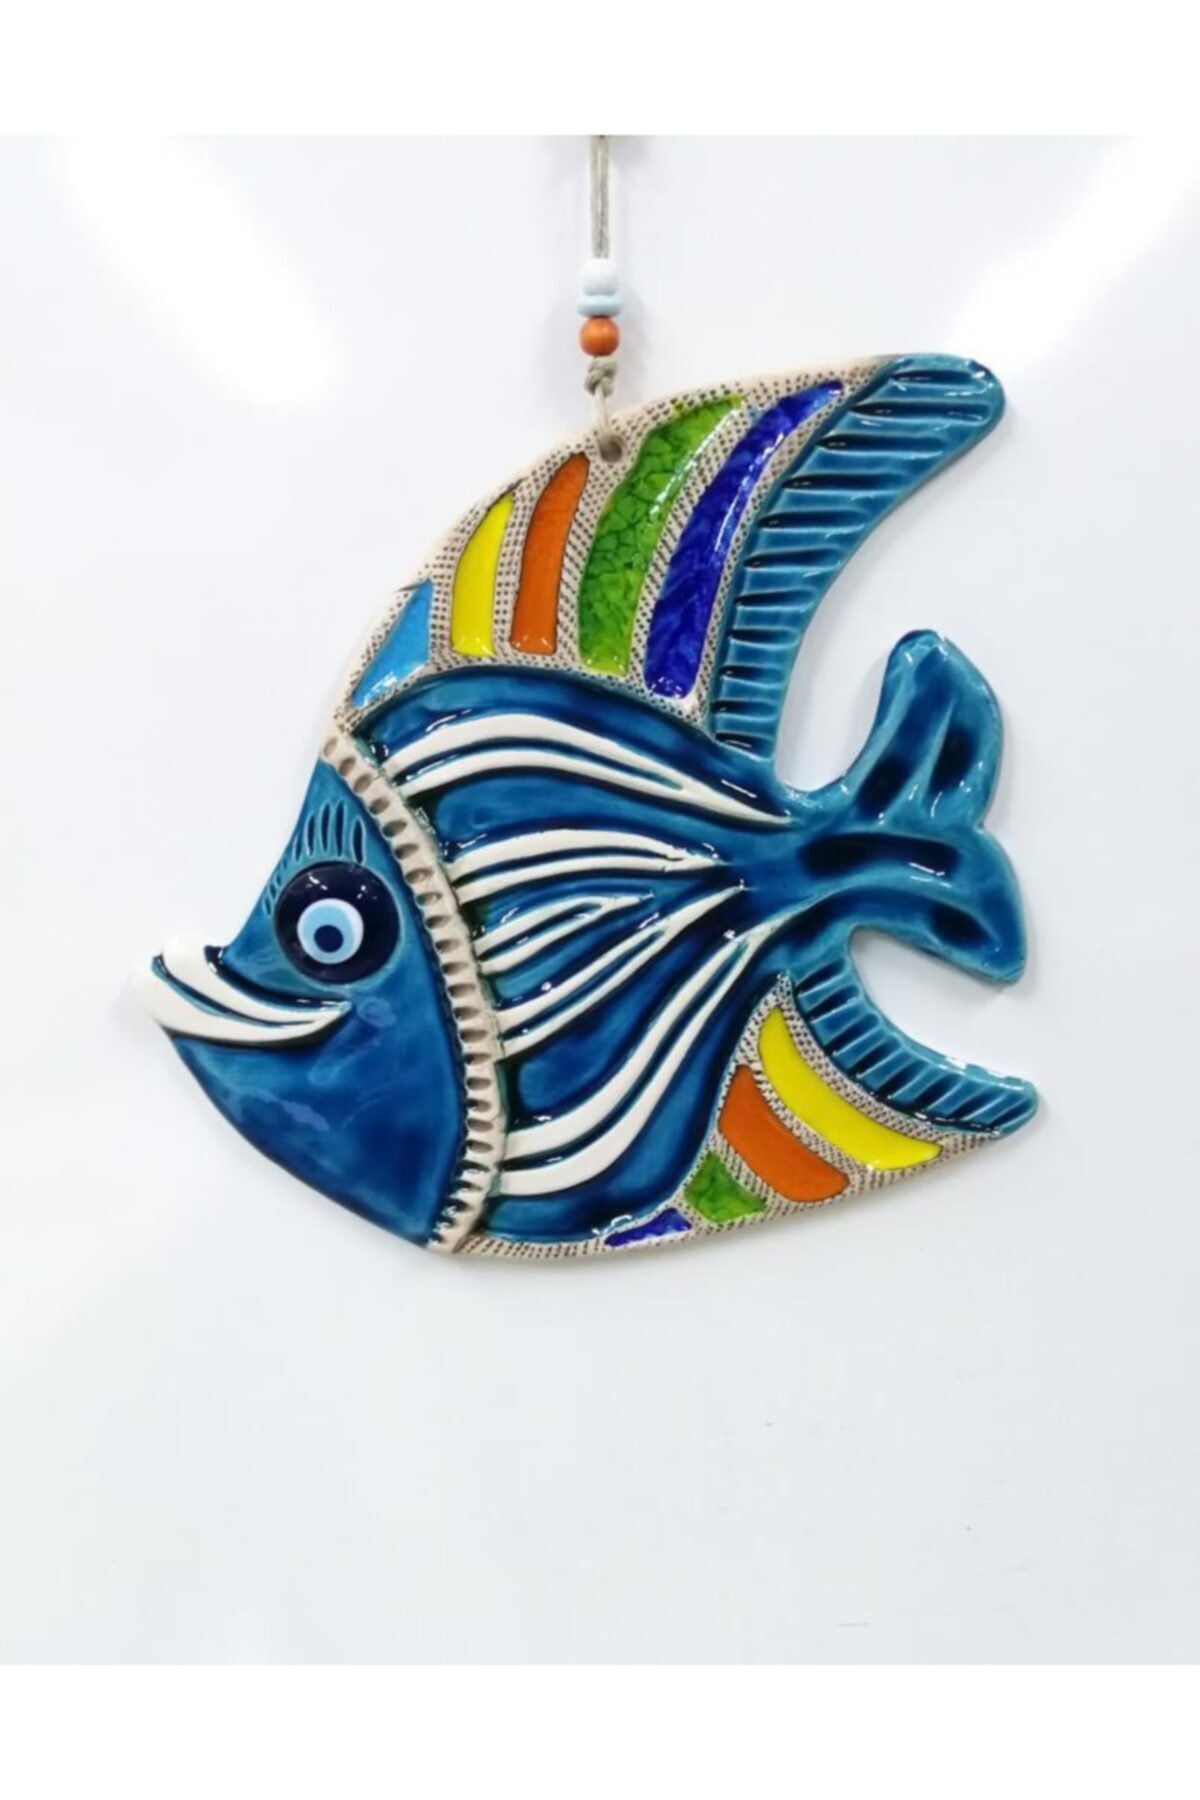 SUME Seramik Sevimli Balık Dekoratif El Işi Duvar Süsü Büyük Boy Nazarlık